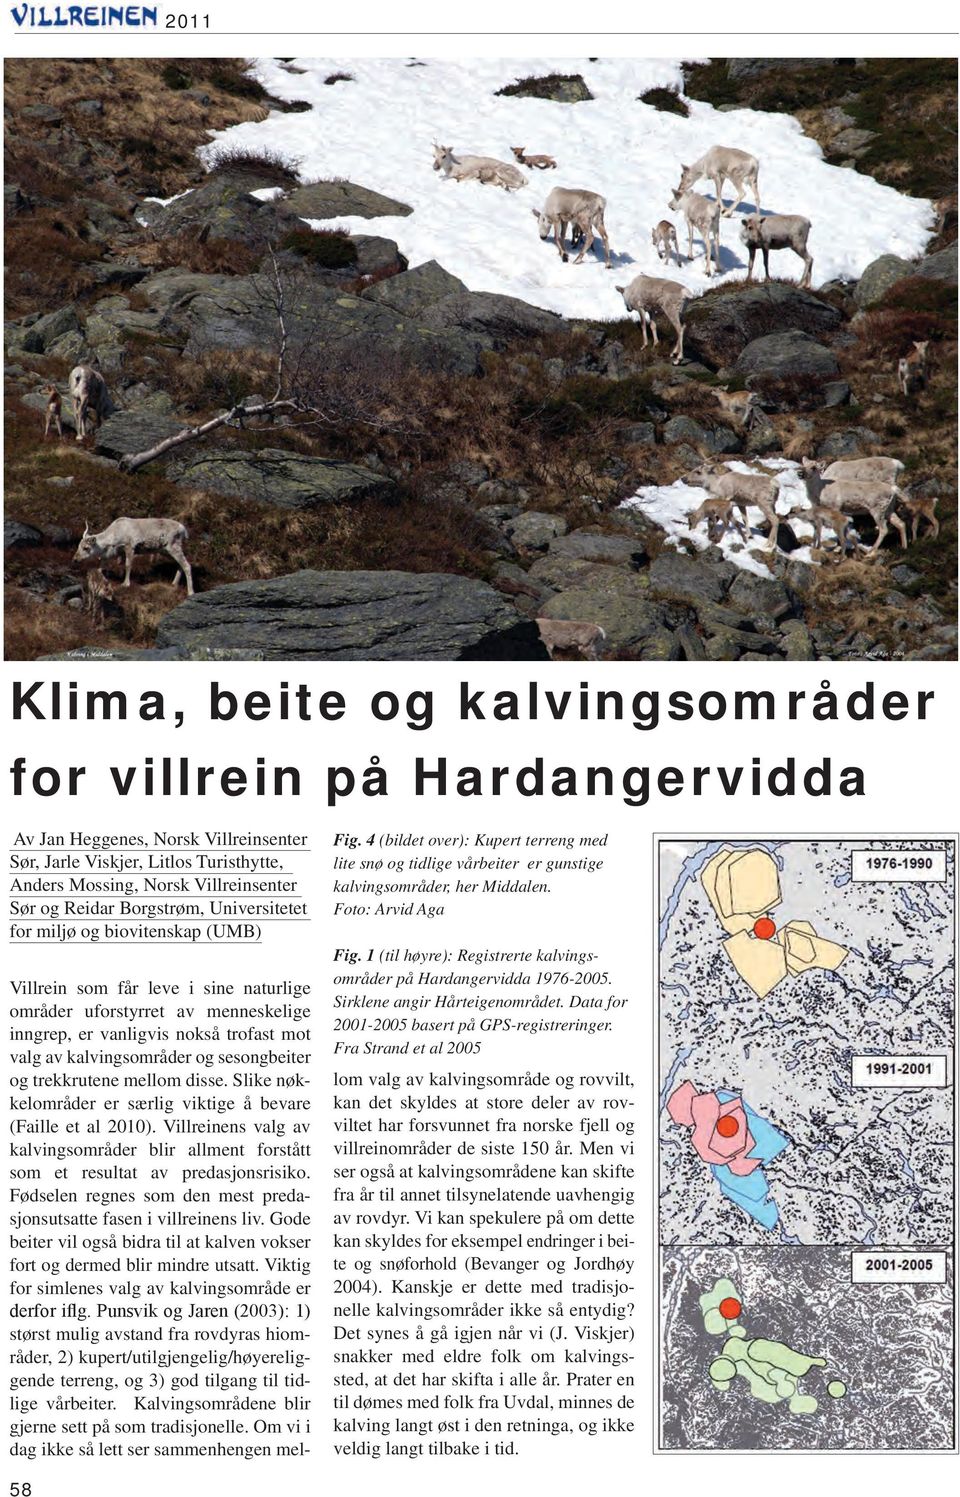 1 (til høyre): Registrerte kalvingsområder på Hardangervidda 1976-2005. Sirklene angir Hårteigenområdet. Data for 2001-2005 basert på GPS-registreringer.